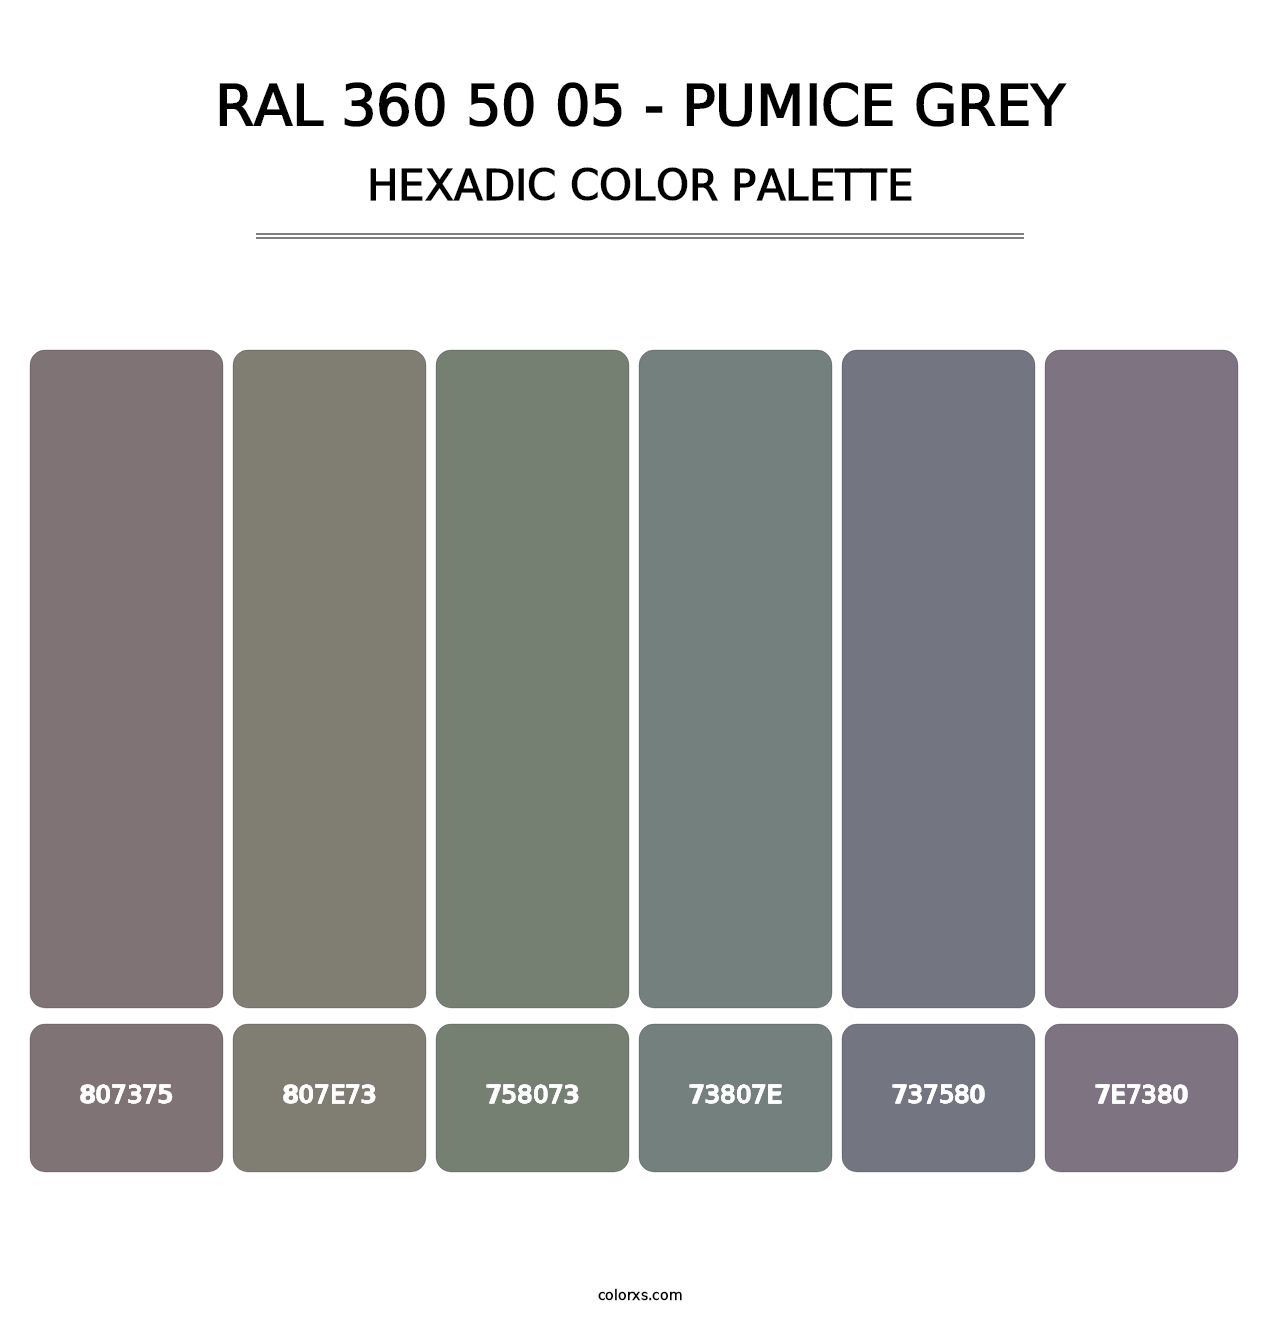 RAL 360 50 05 - Pumice Grey - Hexadic Color Palette